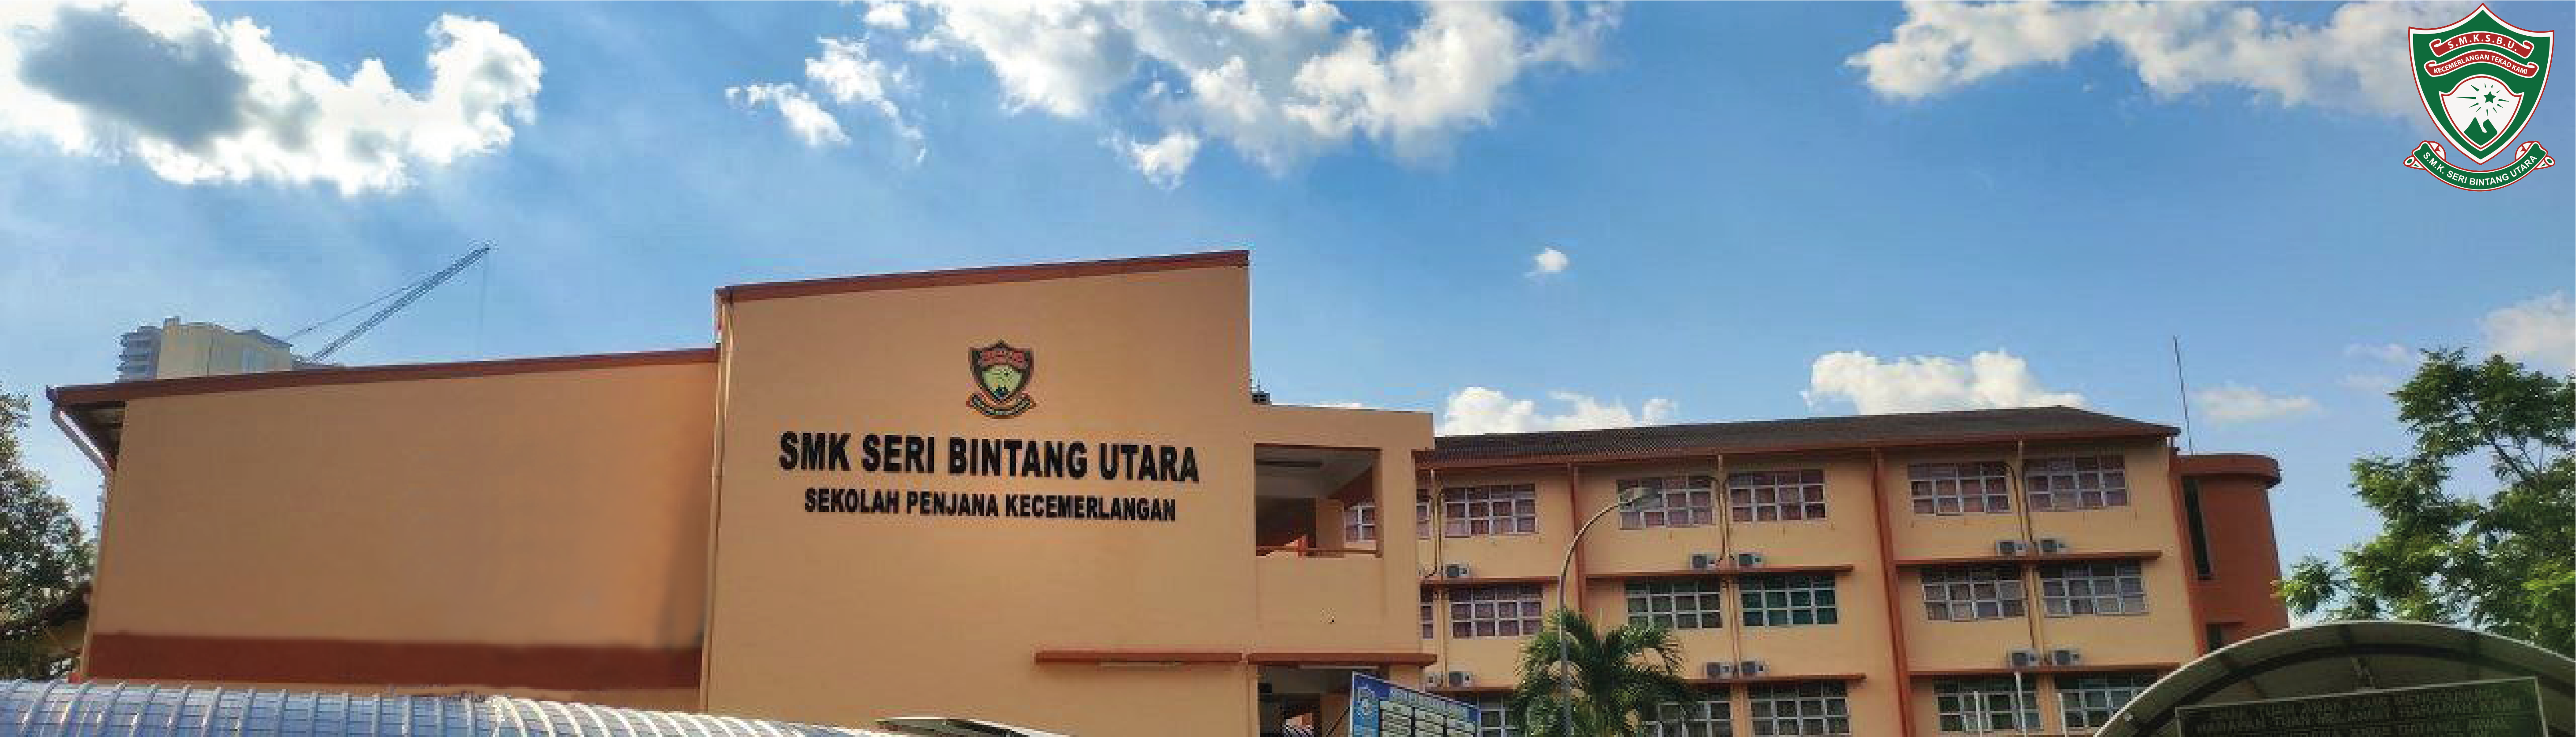 SMK Seri Bintang Utara, my high school